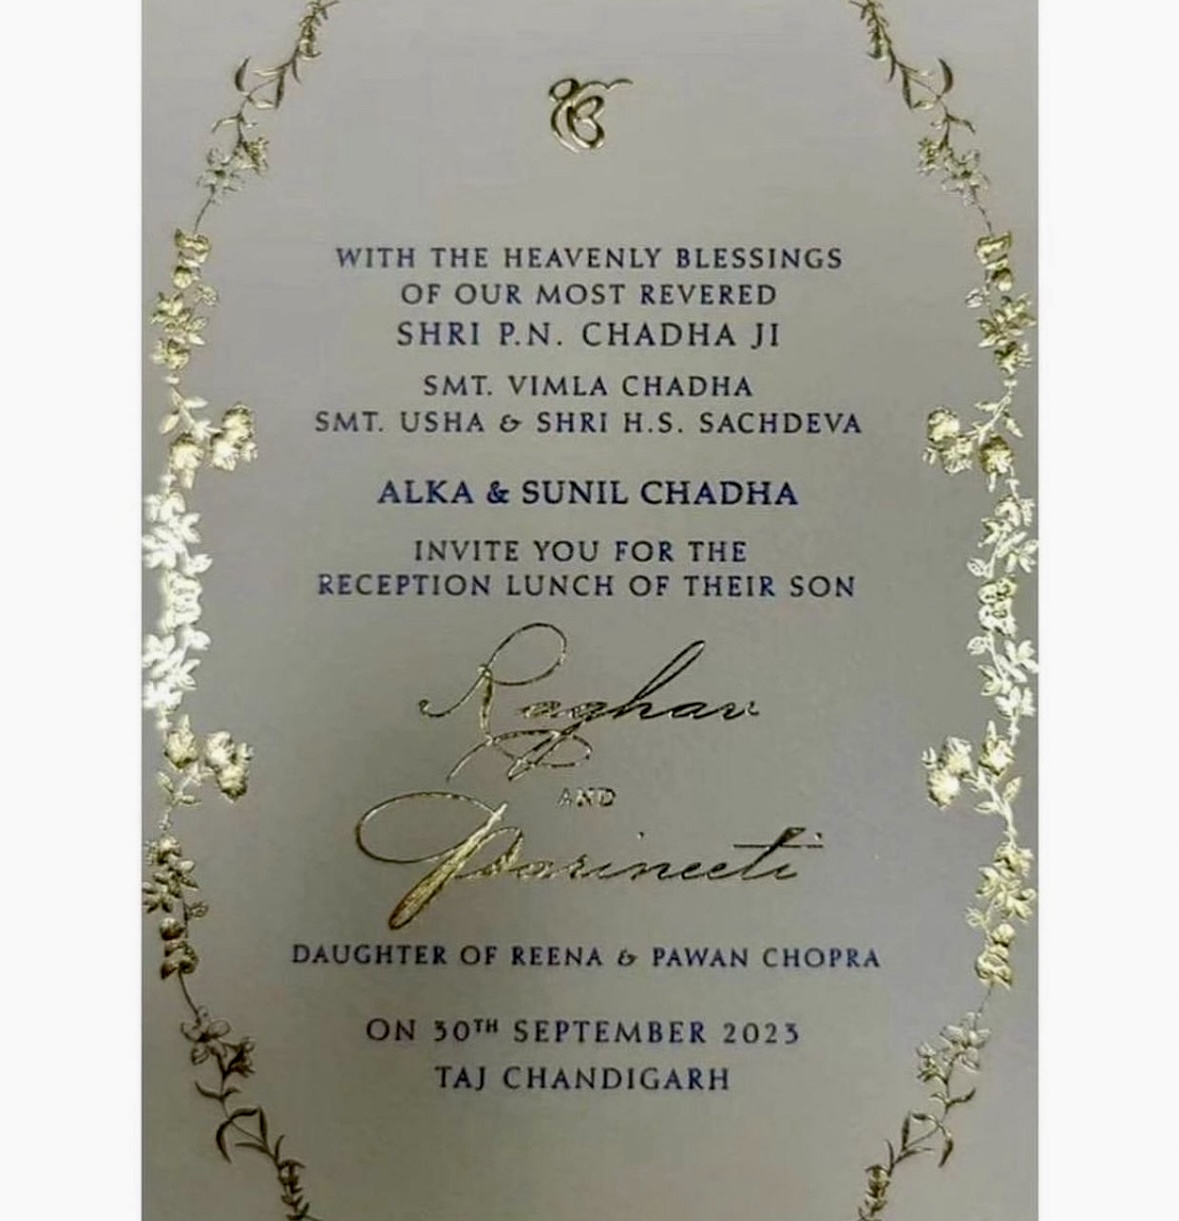 Photo Parineeti Chopra and Raghav Chadha's Sept. 30 Chandigarh Wedding Reception Invite Goes Viral 